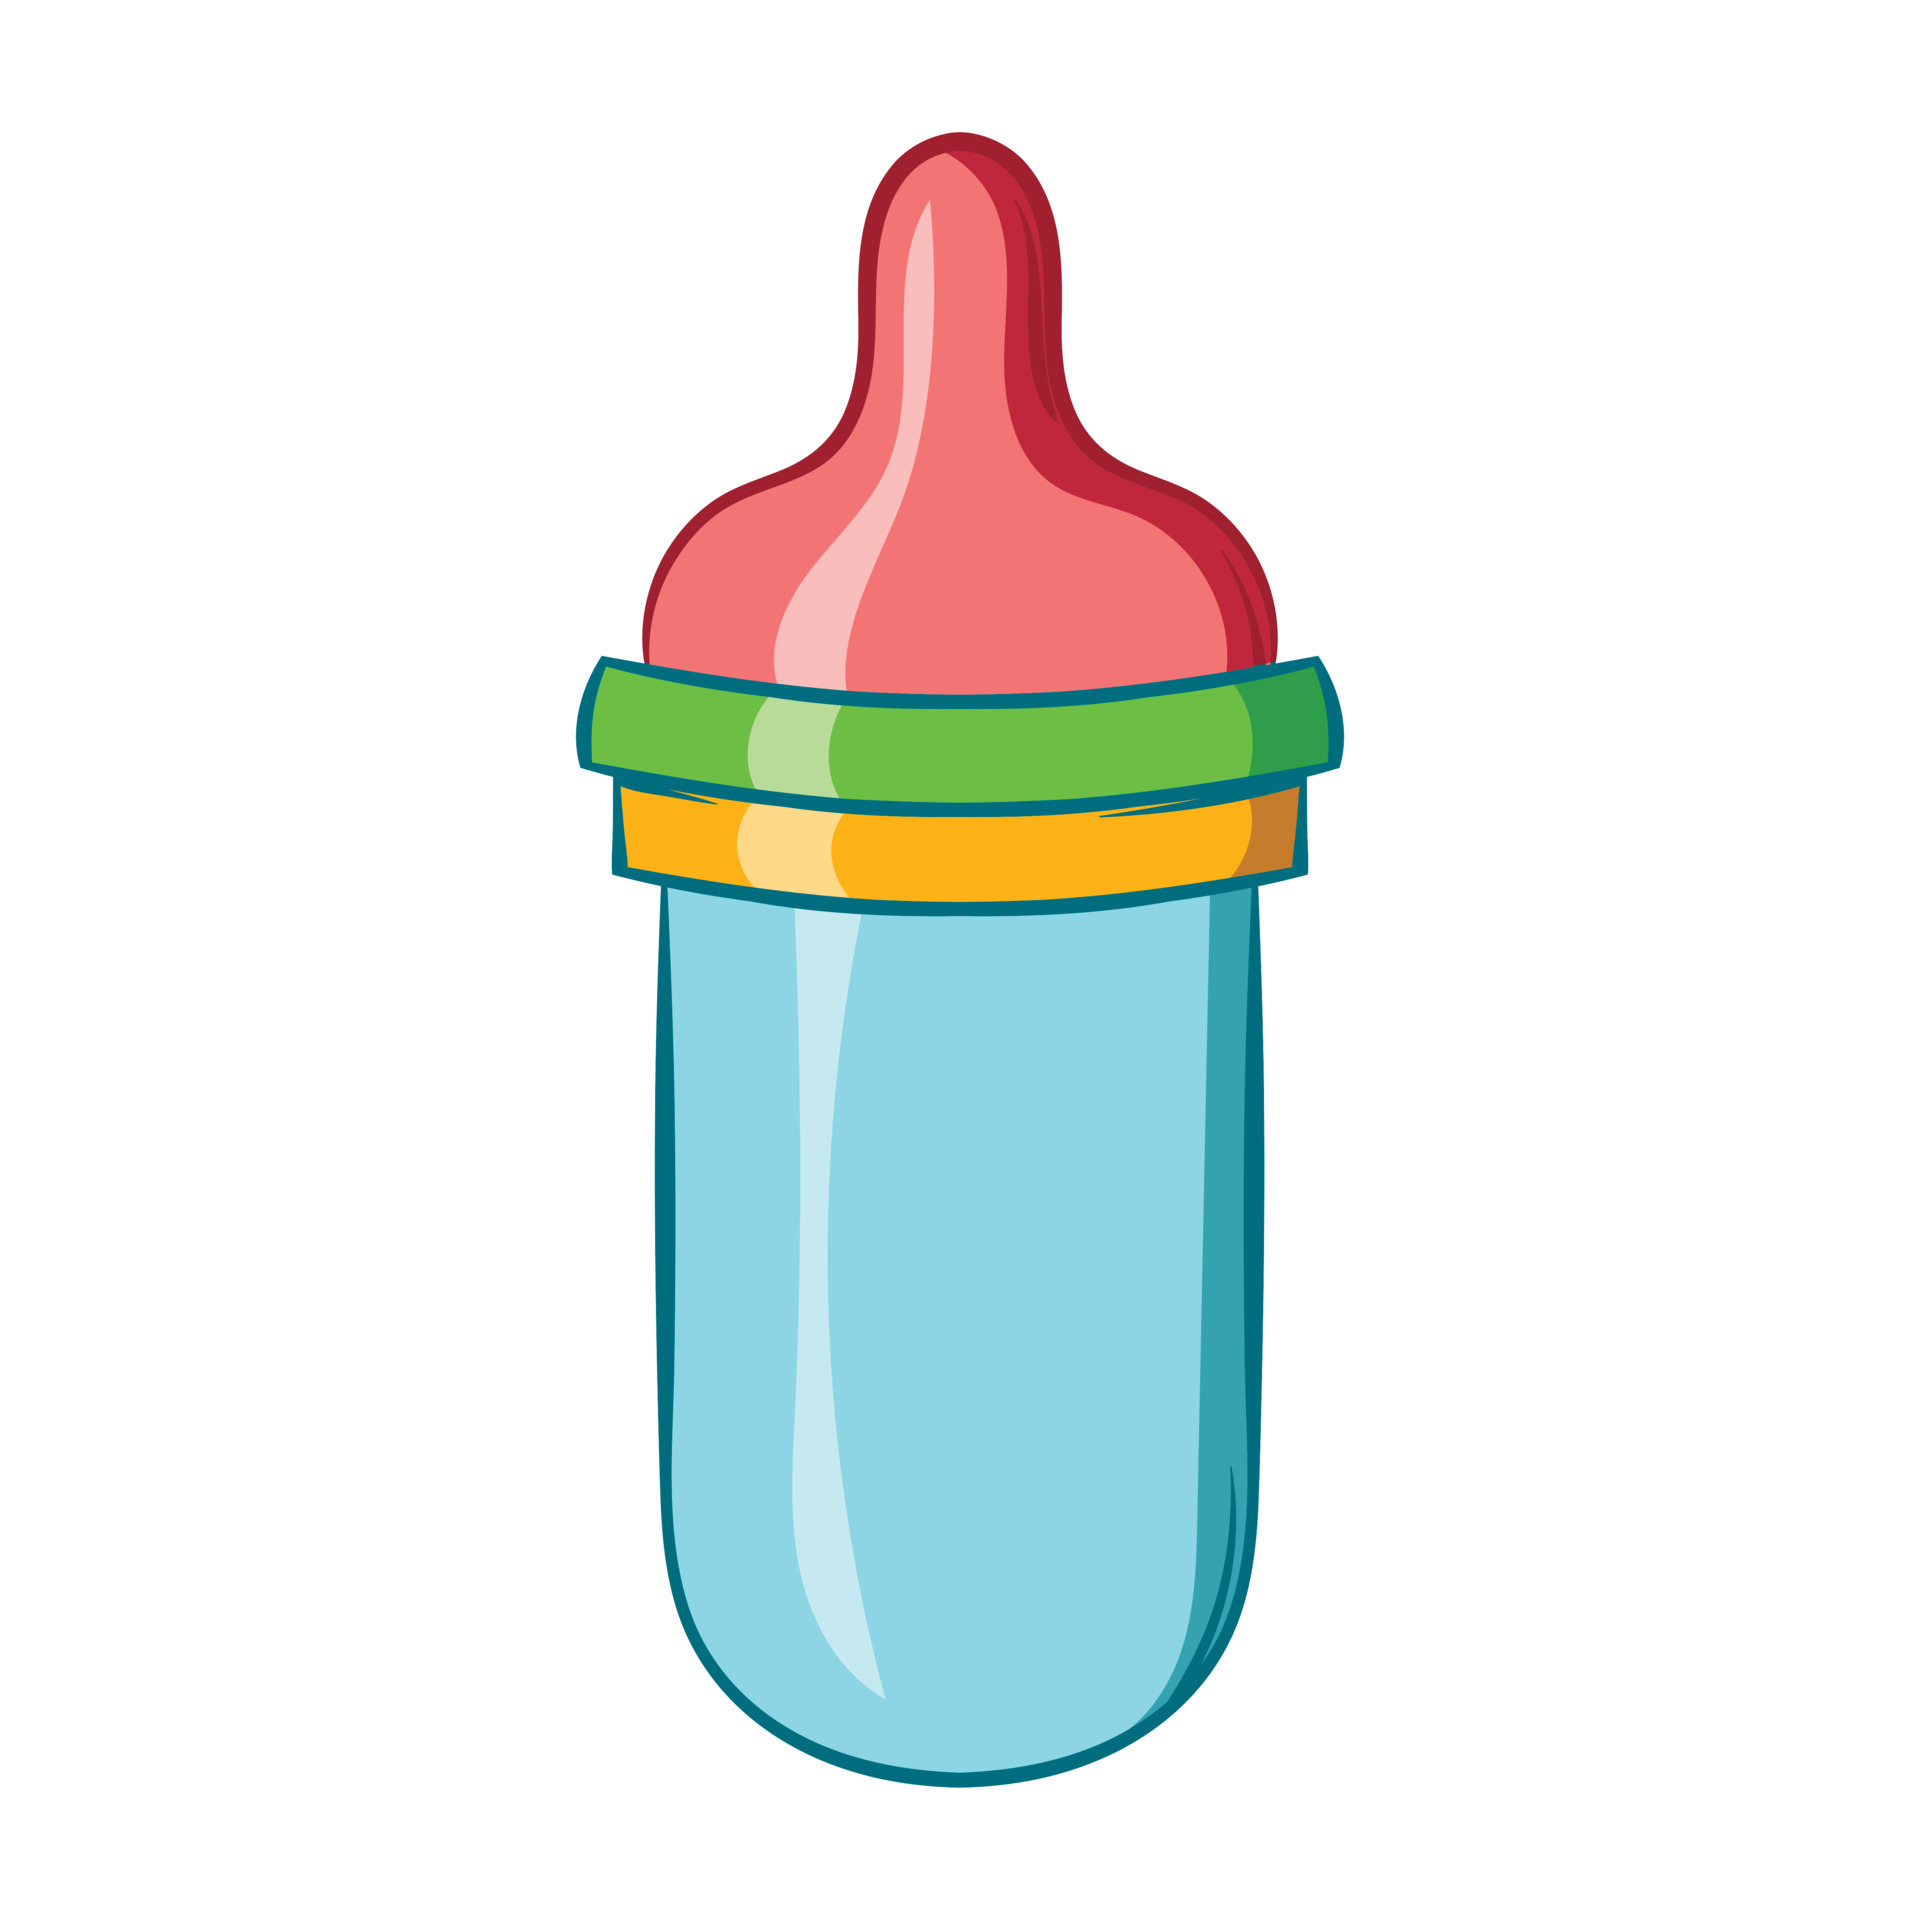 Baby milk bottle icon, cartoon style 14427859 Vector Art at Vecteezy